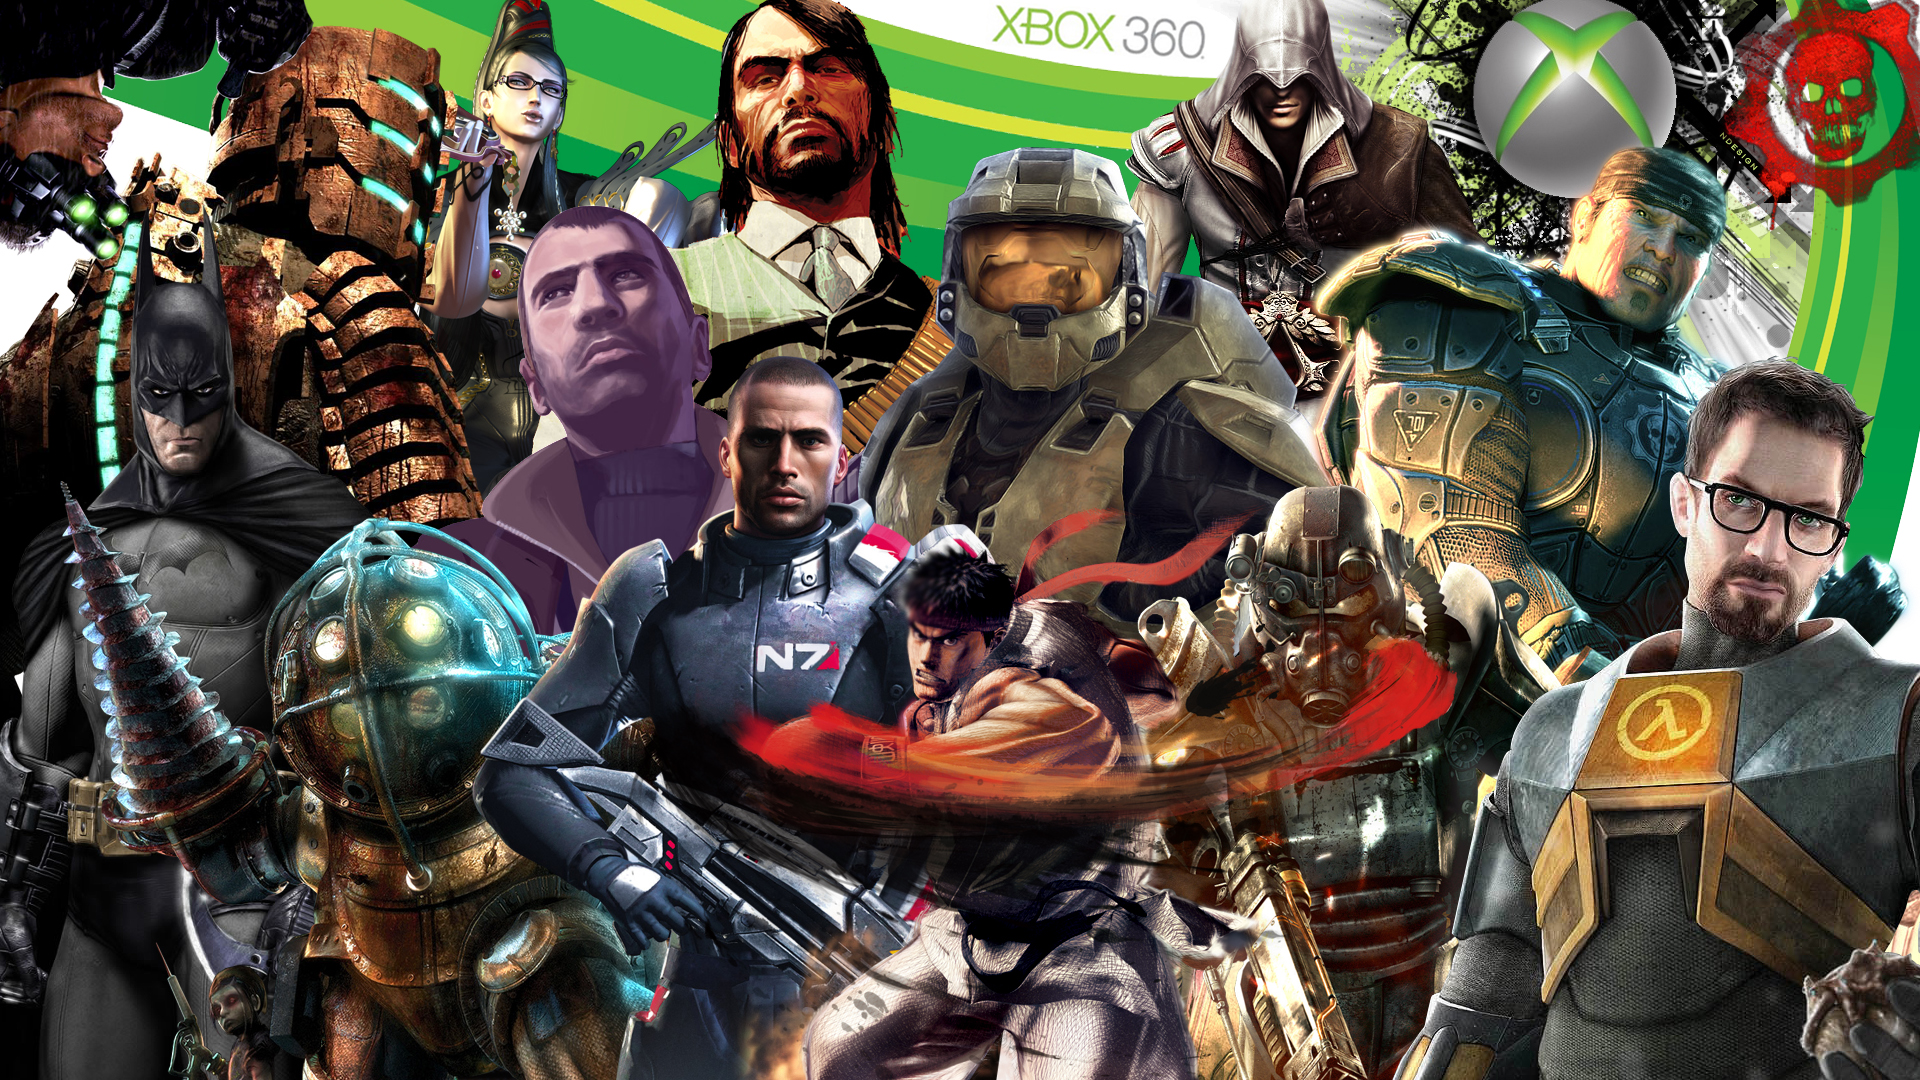 Xbox Games wallpaper Xbox Games wallpaper là bộ sưu tập hình nền thú vị và đẹp mắt dành cho những người yêu thích game. Với nhiều hình ảnh của các trò chơi đình đám như Call of Duty, Assassin\'s Creed, Halo... bạn sẽ có các tùy chọn đa dạng để tùy chỉnh màn hình nền của mình, tạo ra một không gian làm việc và giải trí độc đáo.